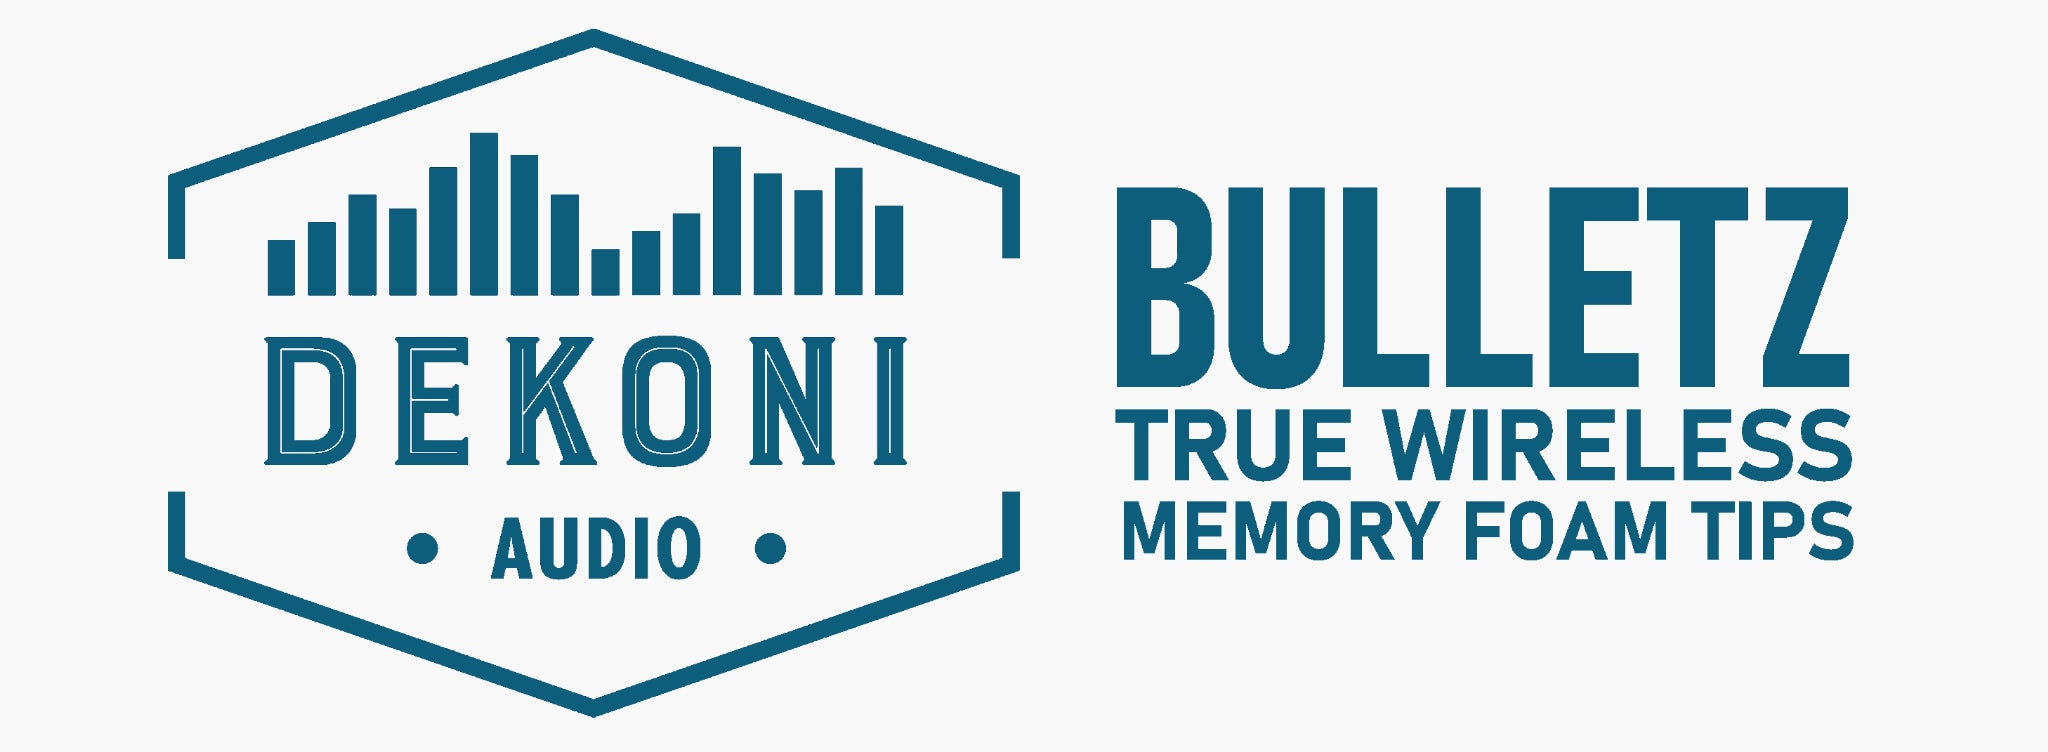 Dekoni Bulletz for TWS banner with logo